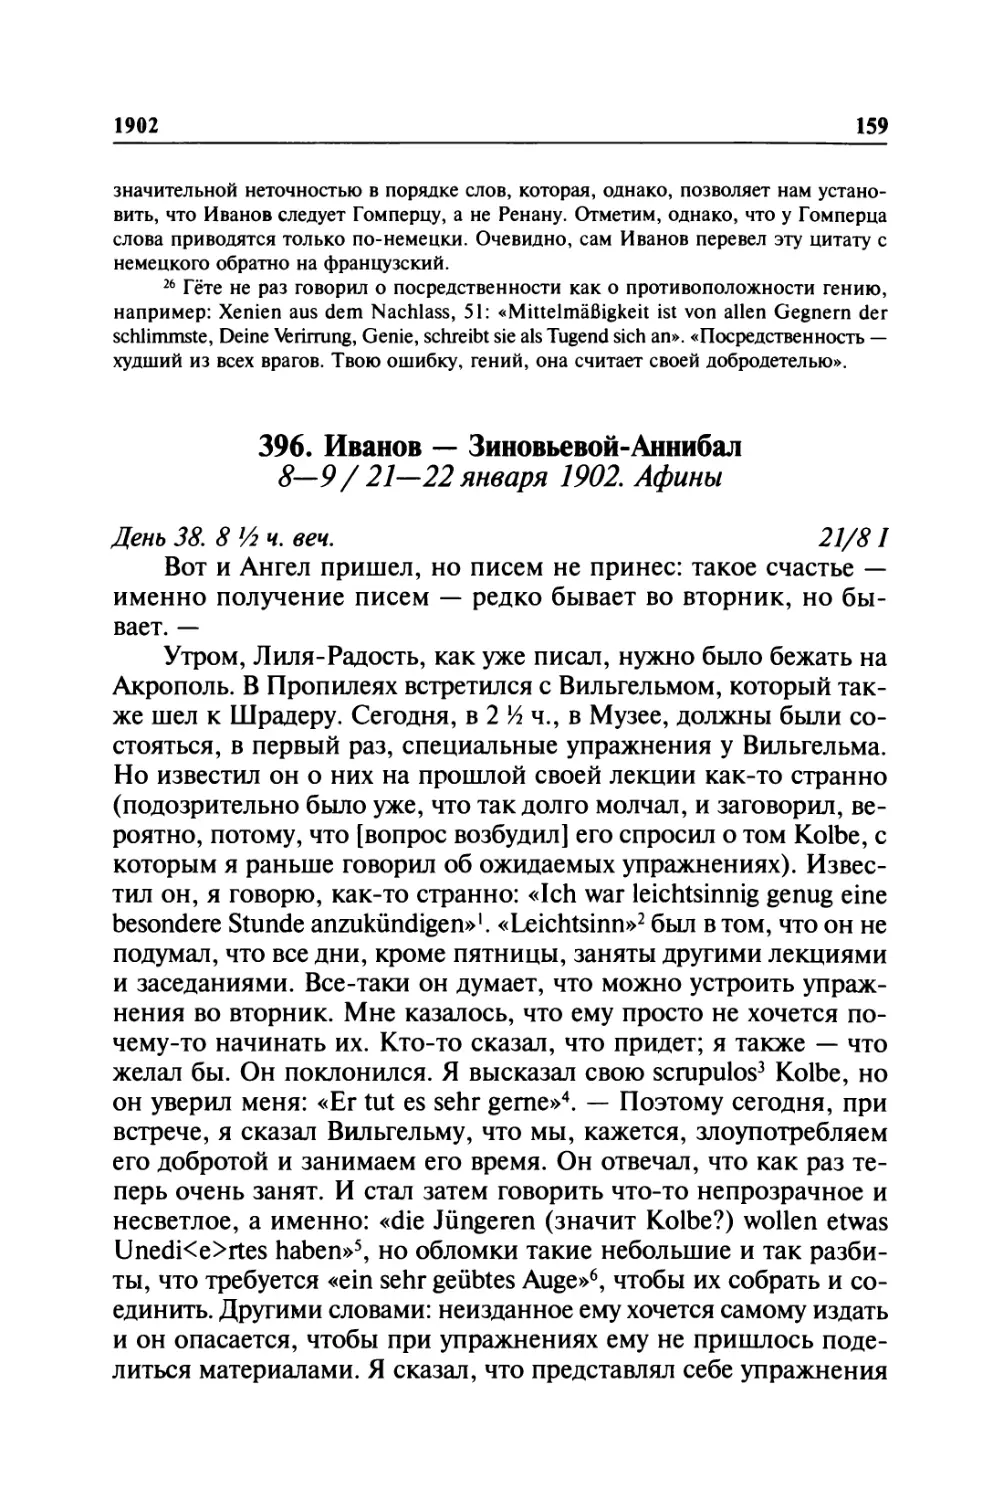 396. Иванов — Зиновьевой-Аннибал. 8—9 / 21—22 января 1902. Афины